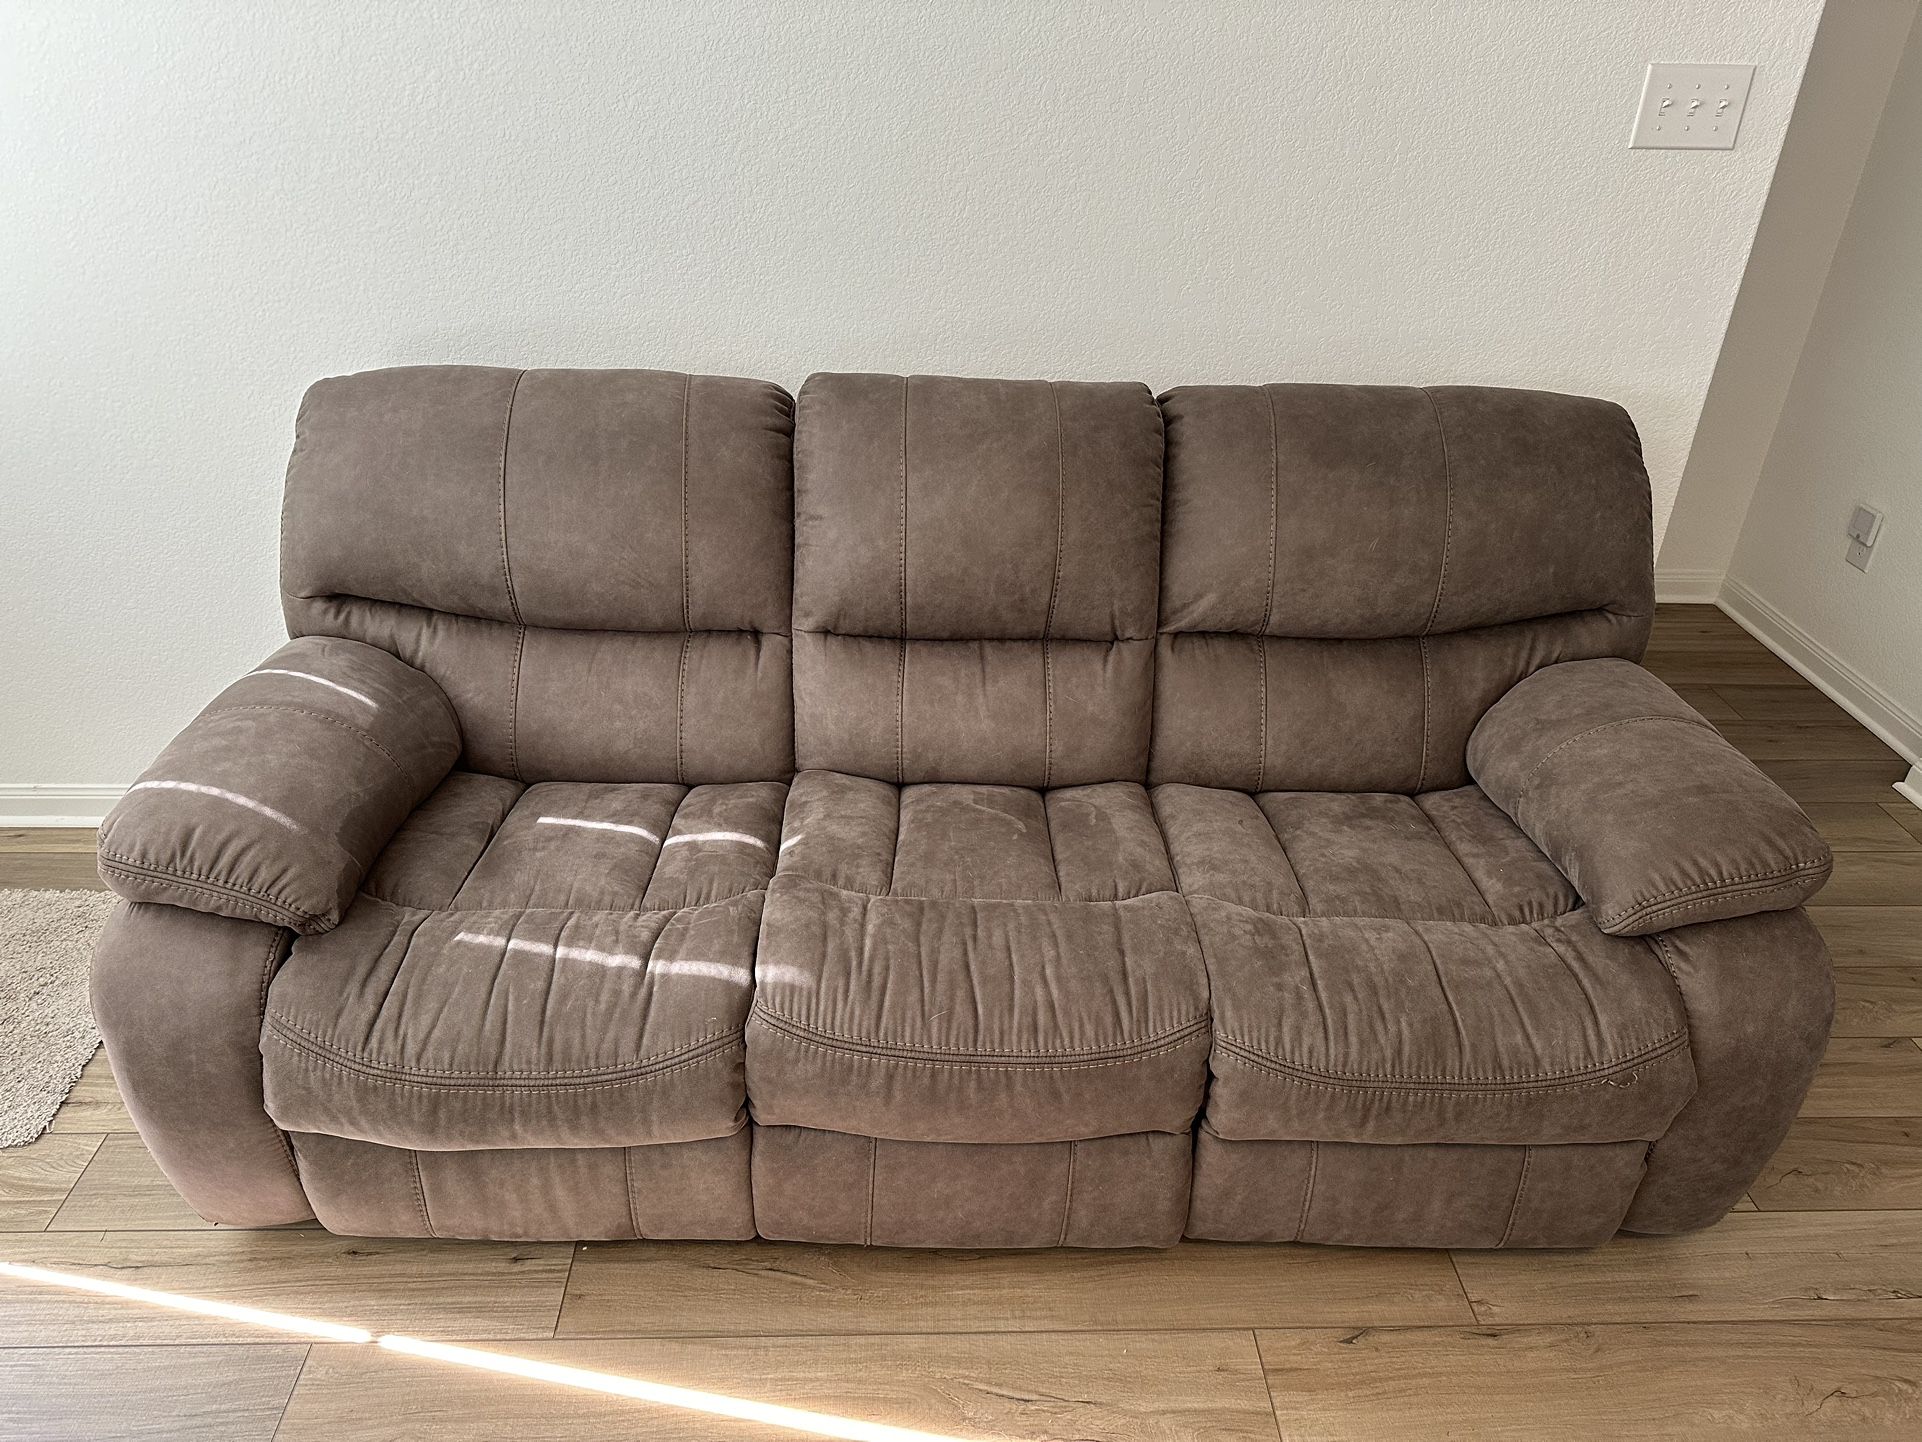 Power sofa + loveseat + Warranty  $1200 OBO 